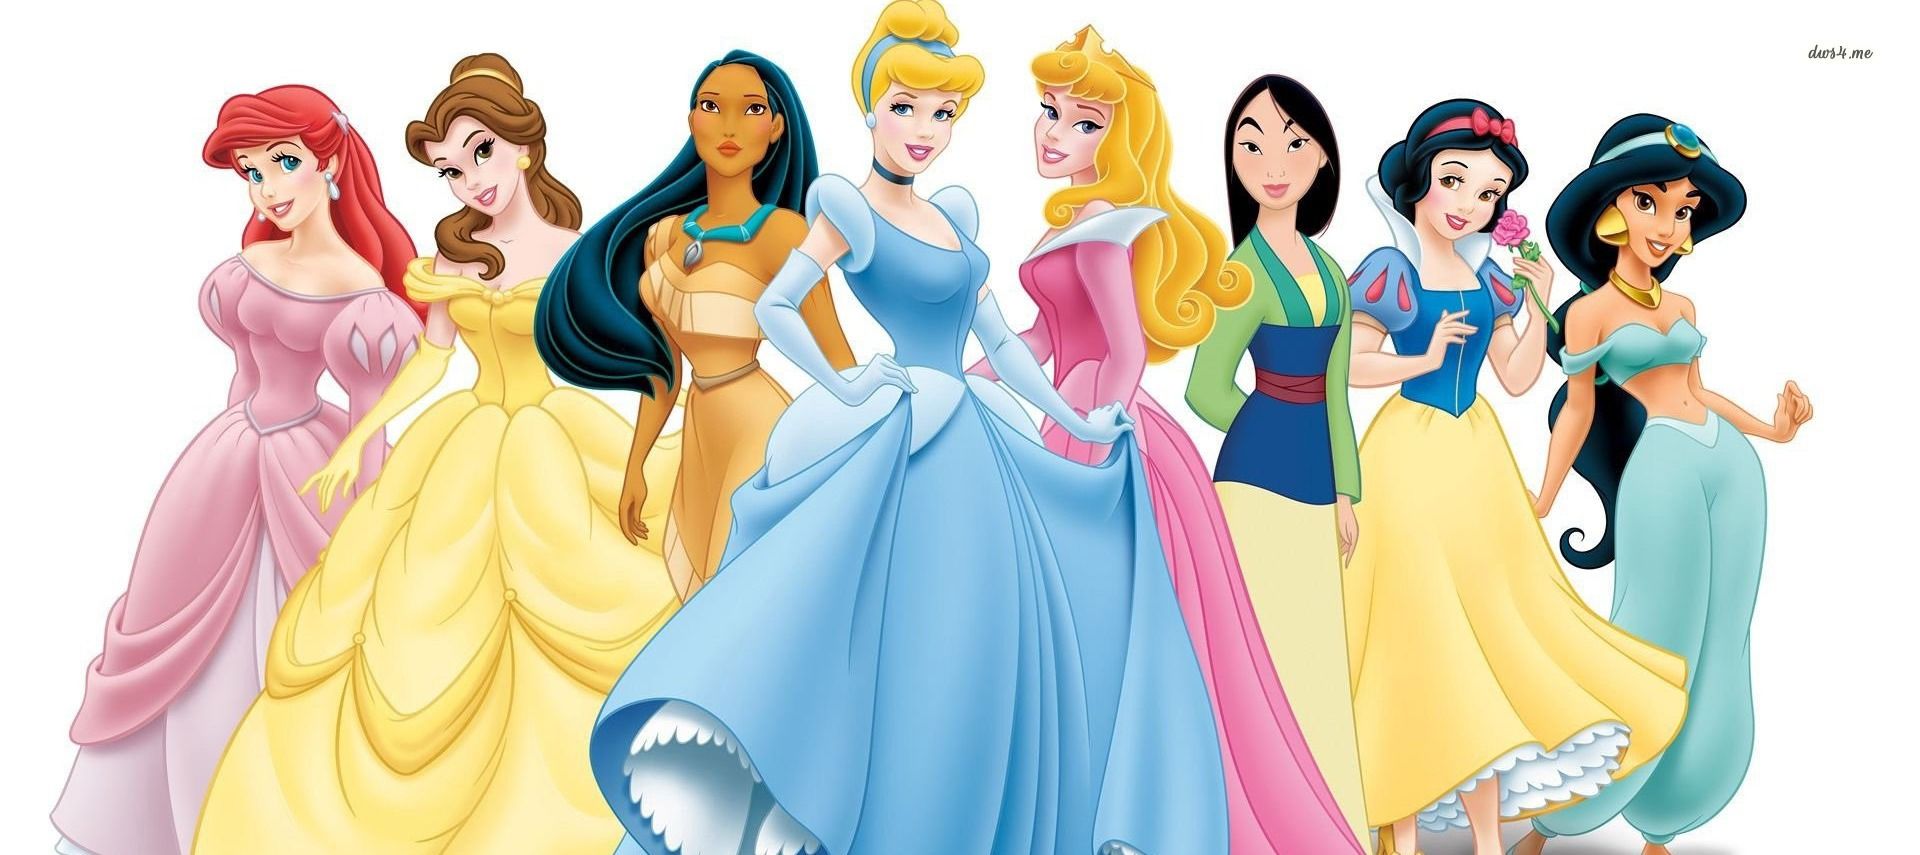 Guarda le principesse della Disney senza trucco